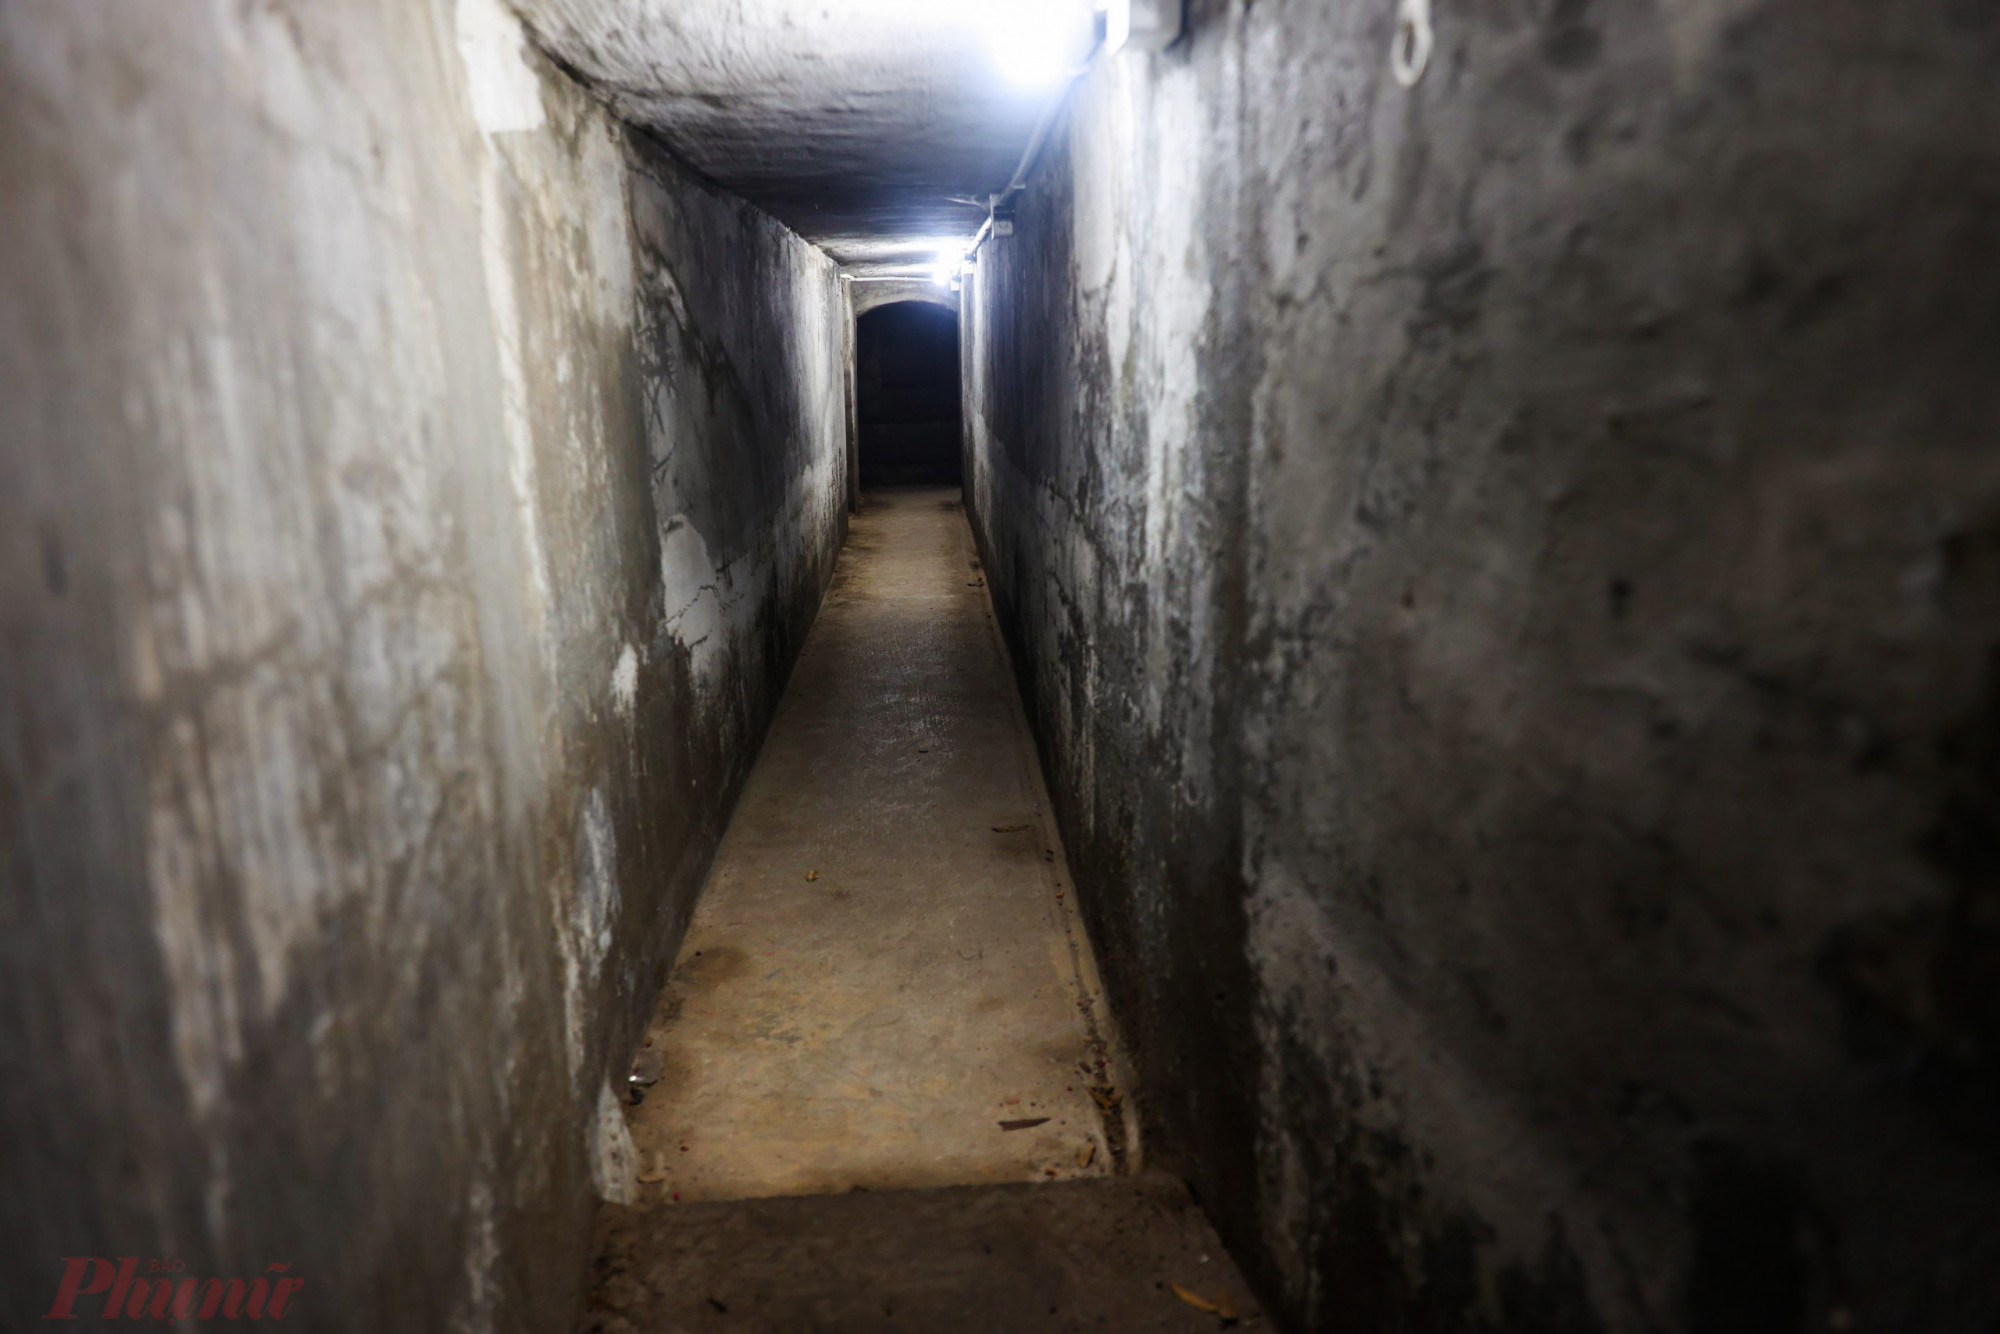 Hầm dài gần 100 m, rộng khoảng 50 cm vừa đủ một người đi, độ cao từ 1,5 đến 1,7 m. Xung quanh hầm trát xi măng kiên cố